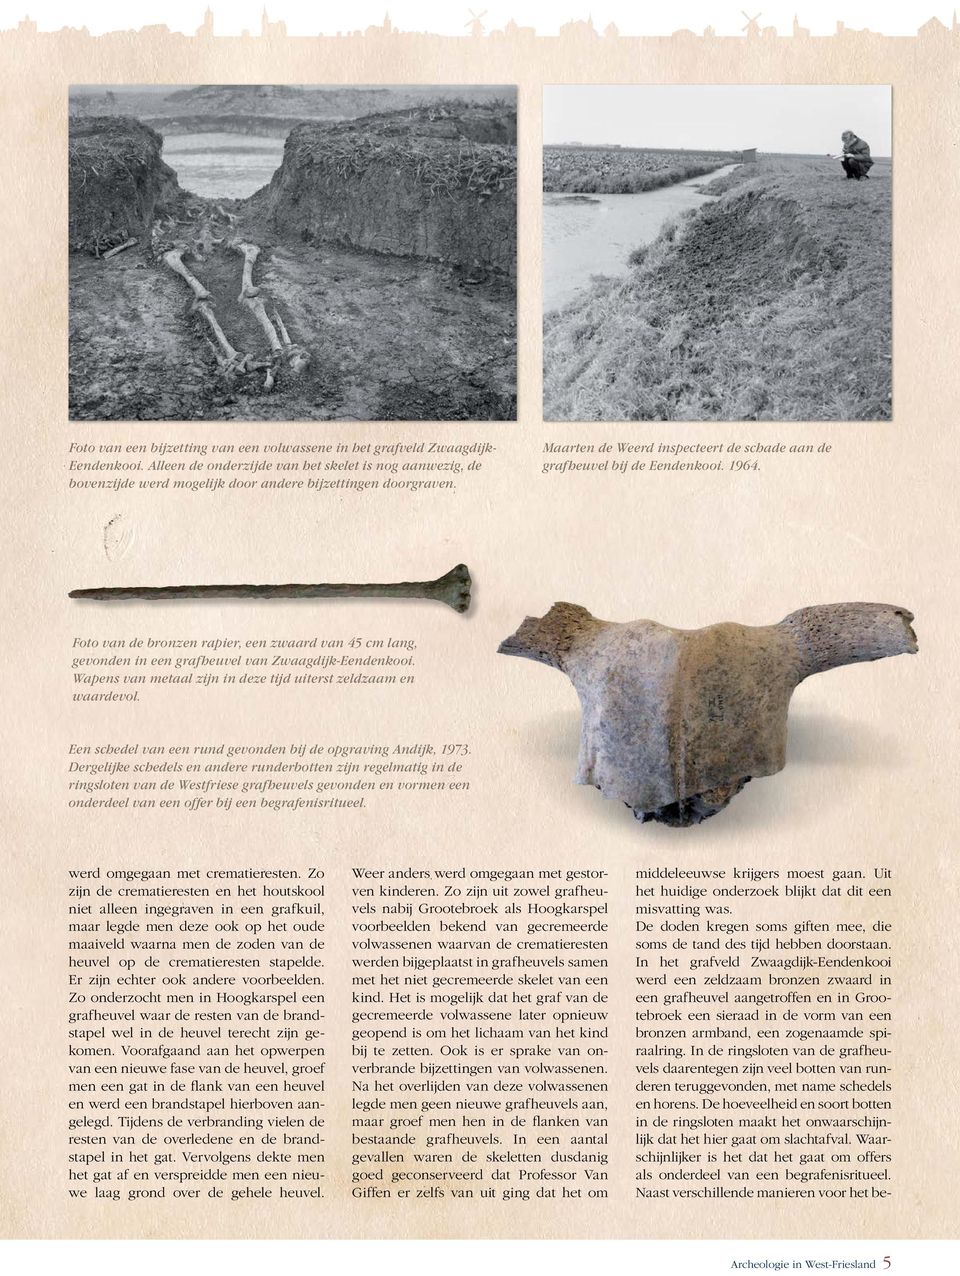 Wapens van metaal zijn in deze tijd uiterst zeldzaam en waardevol. Een schedel van een rund gevonden bij de opgraving Andijk, 1973.